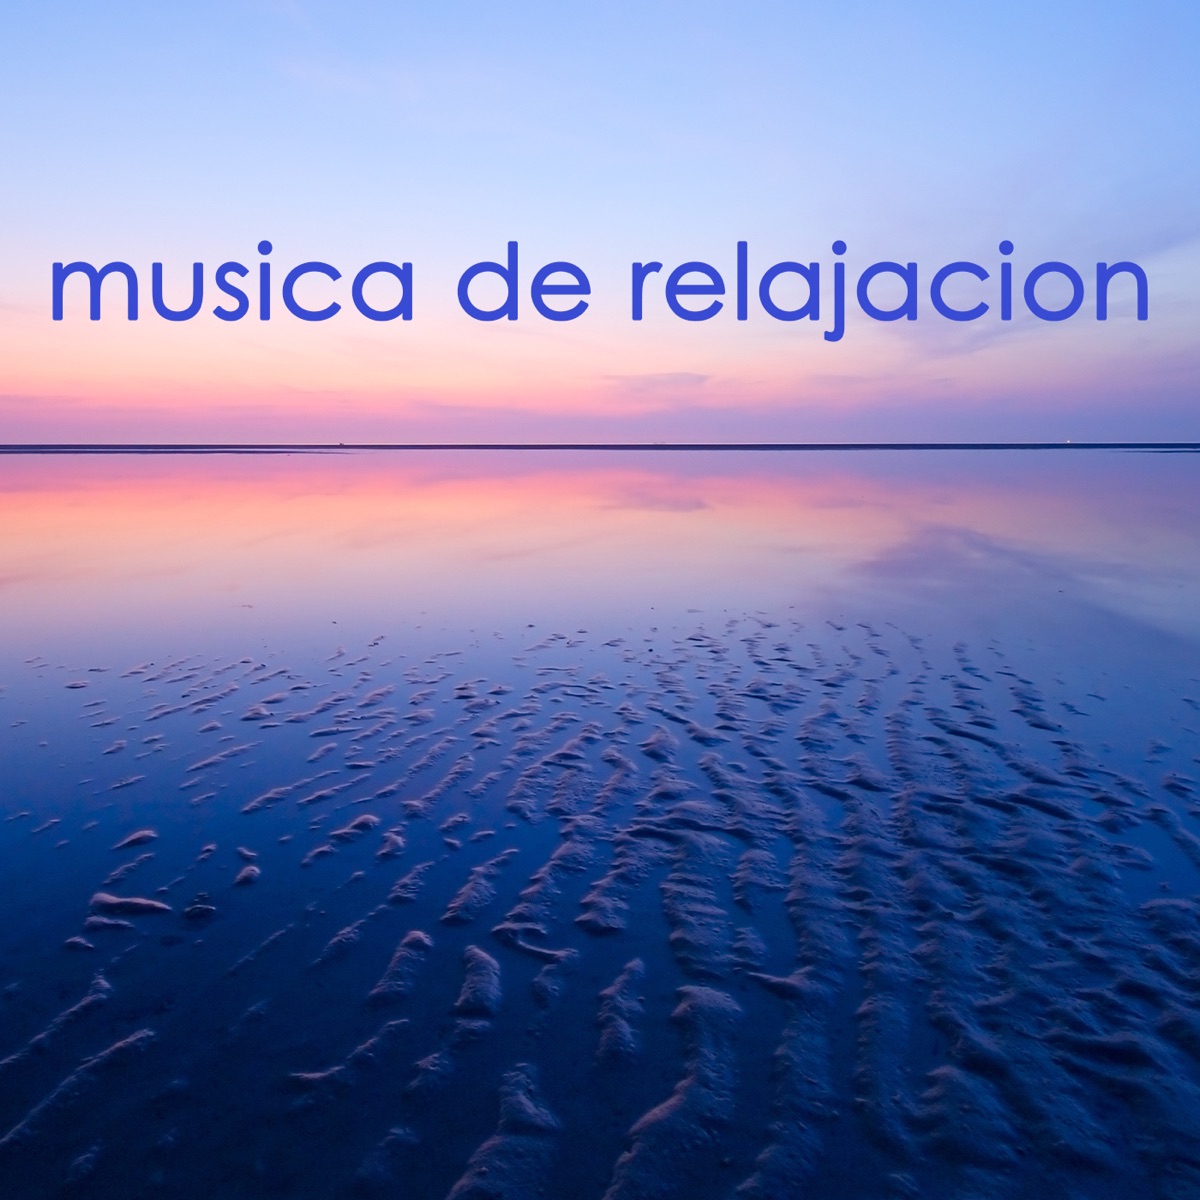 Música de Relajacion - Música Relajante para Dormir y Música para Relajar  la Mente con Sonidos de la Naturaleza - Album by Relajacion Del Mar - Apple  Music